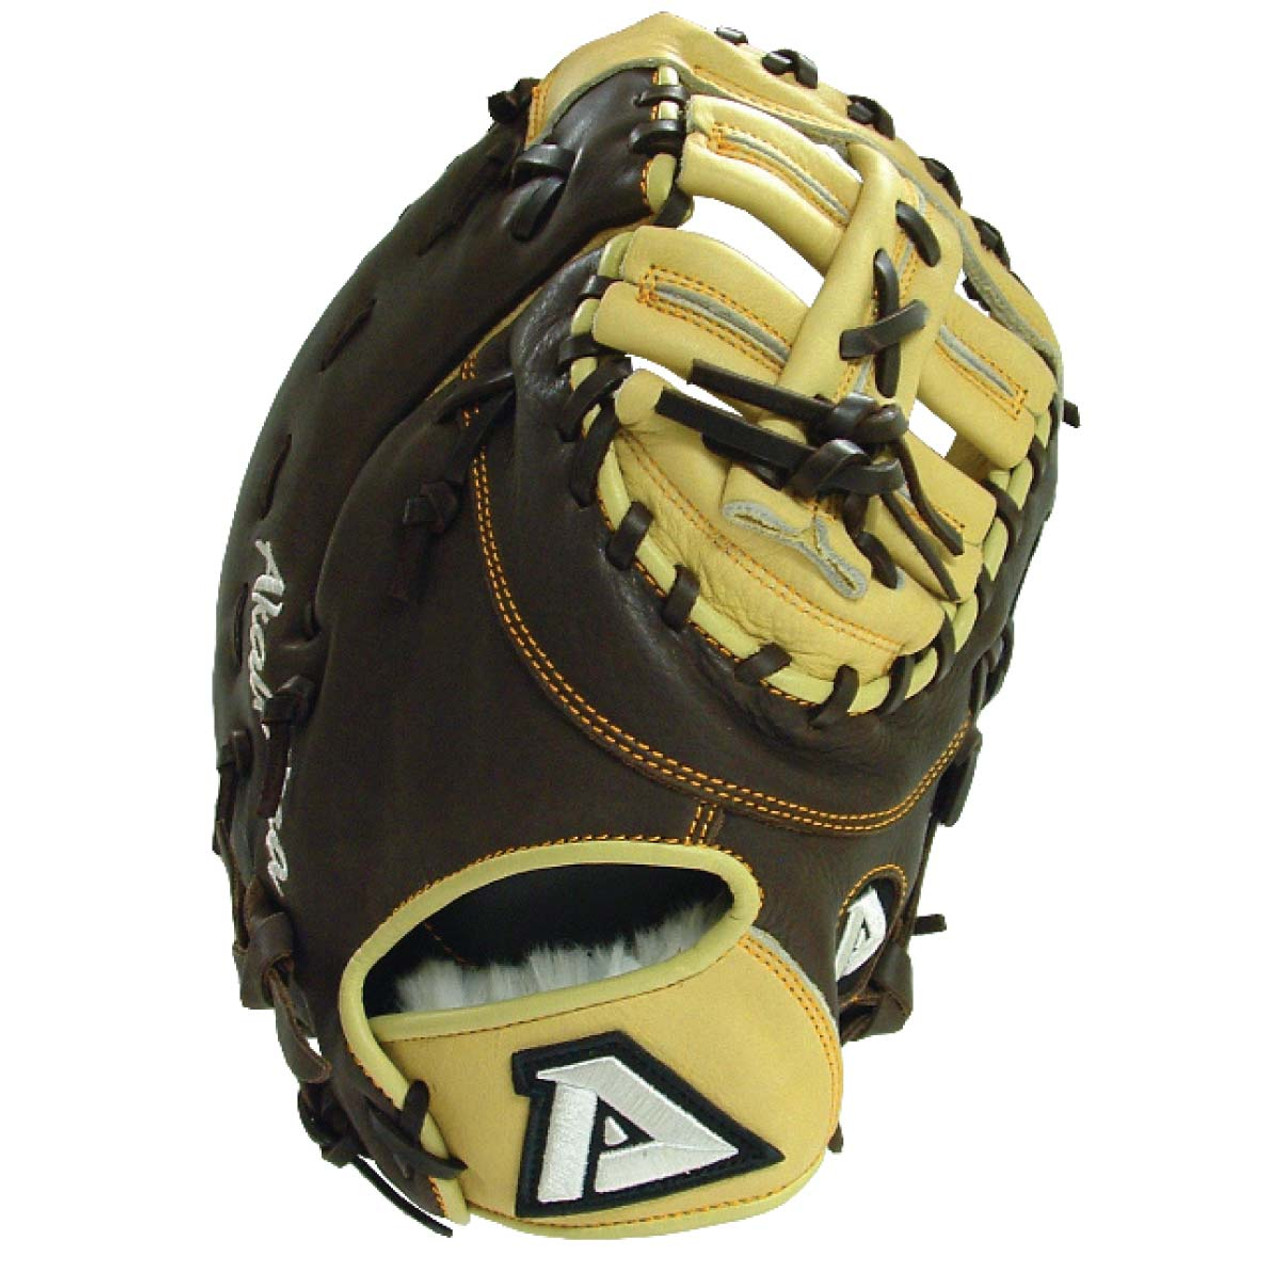 akadema first base glove